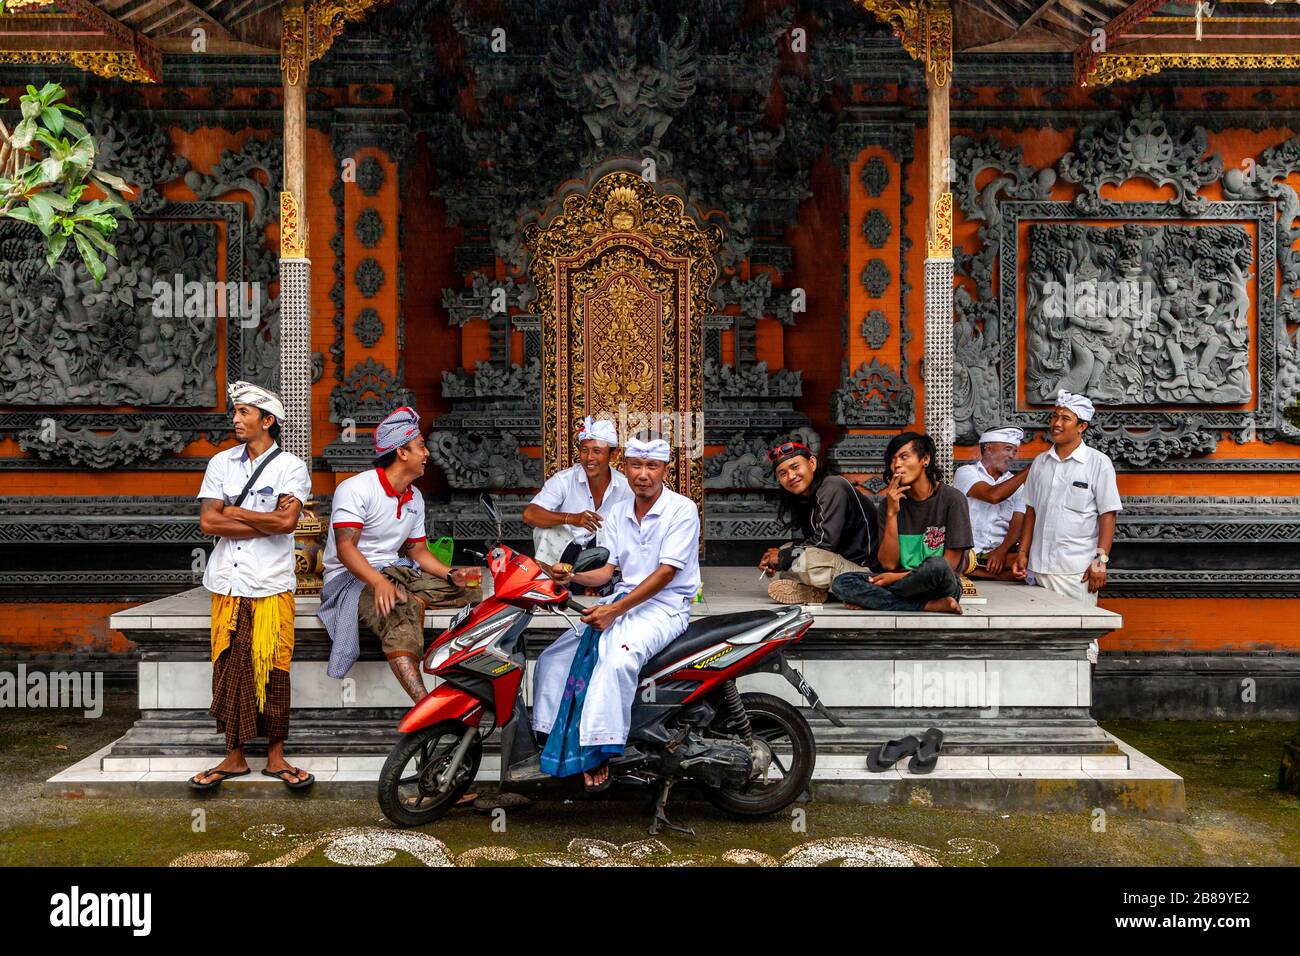 Eine Gruppe balinesischer Hindu-Männer außerhalb EINES Tempels, Kintamani-Gebiet, Bali, Indonesien. Stockfoto